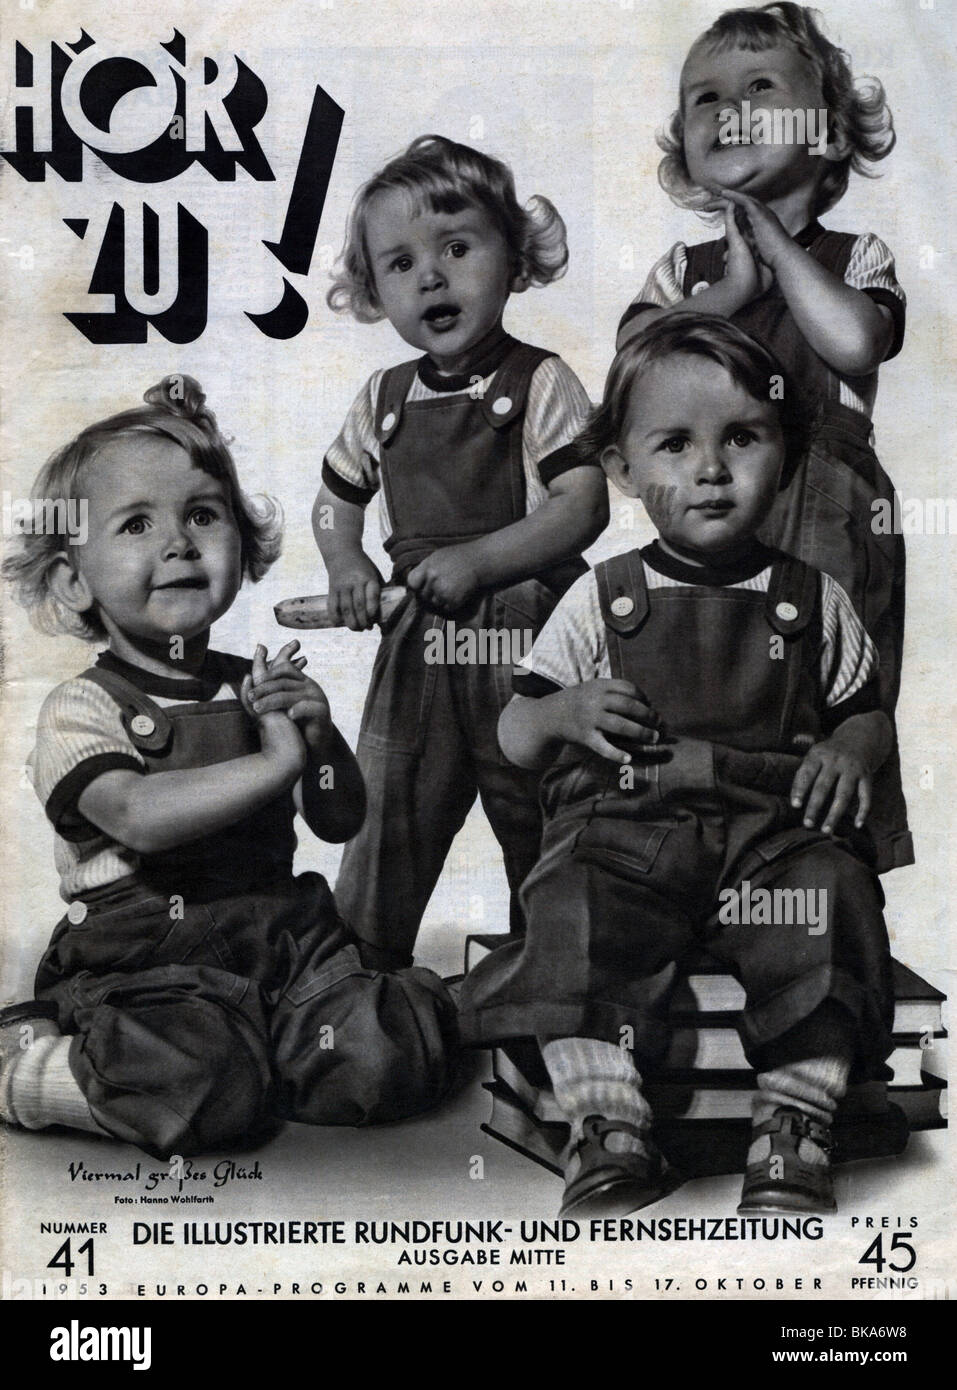 Riviste / riviste, 1953, 'Hör Zu', numero 41, titolo, 'Viermal grosses Glück' (Quattro volte fortuna), edizione Hamburg Mitte, , Foto Stock